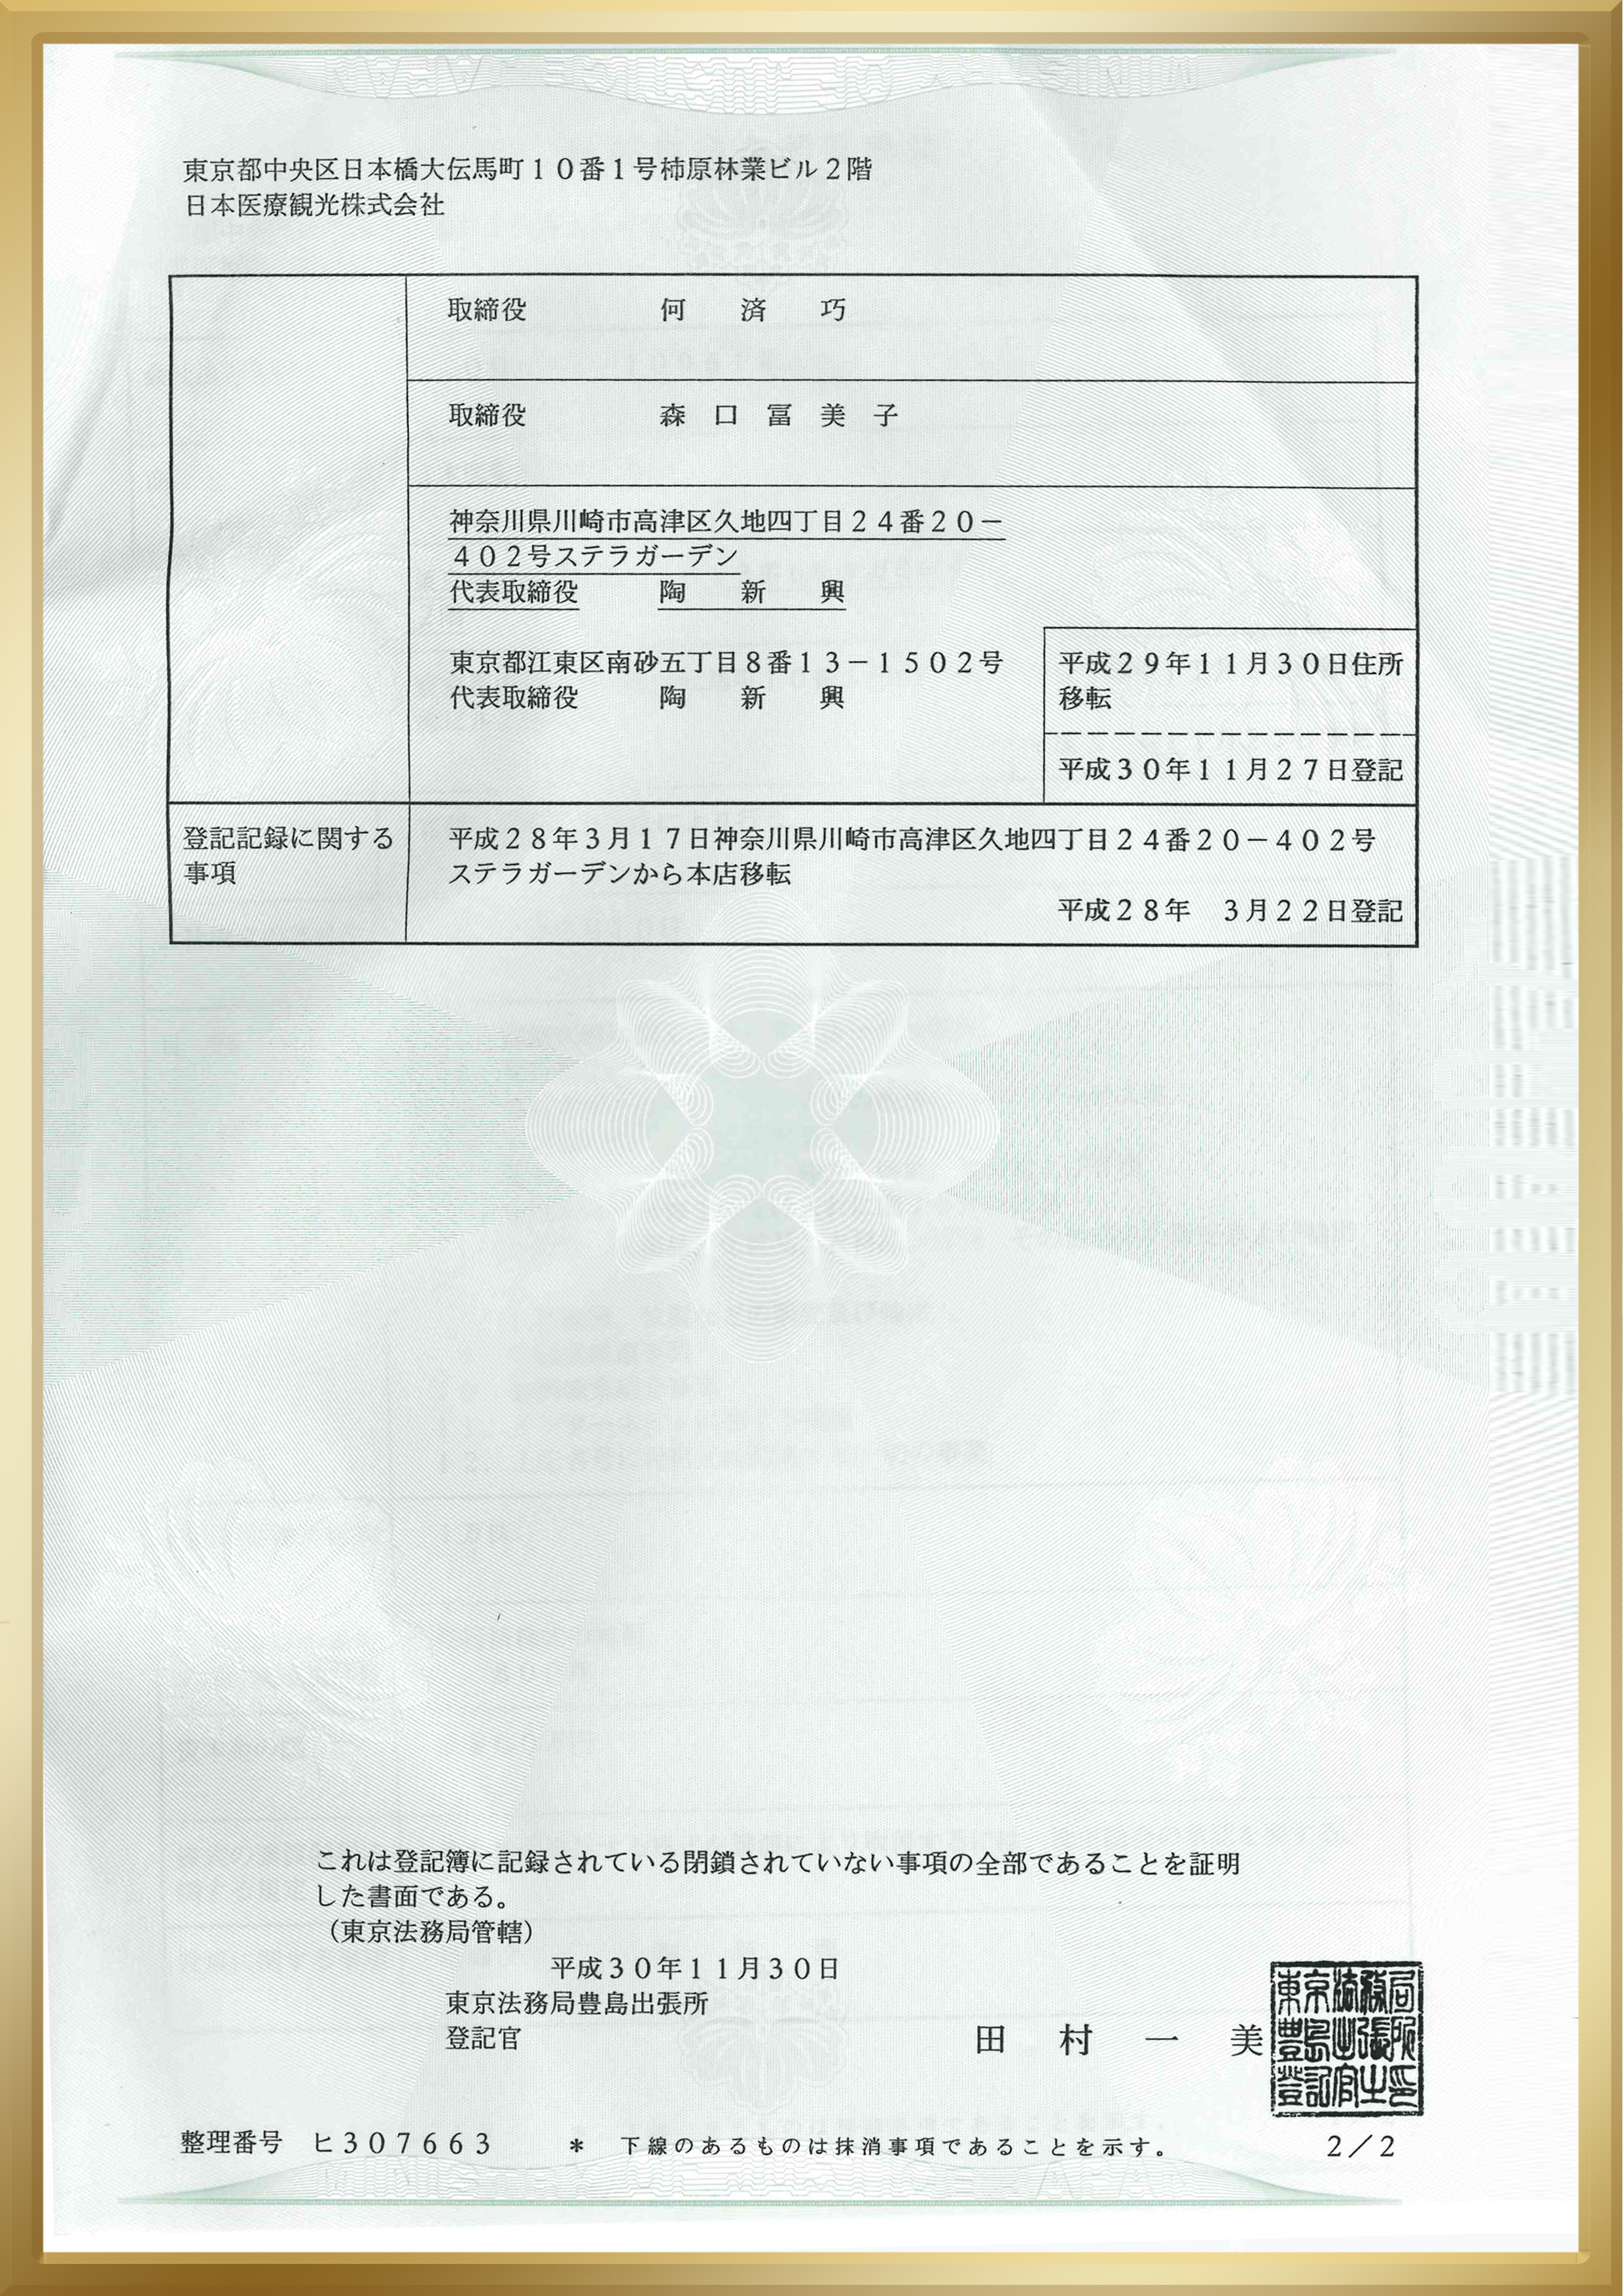 倒数第六：日本营业执照-2.jpg